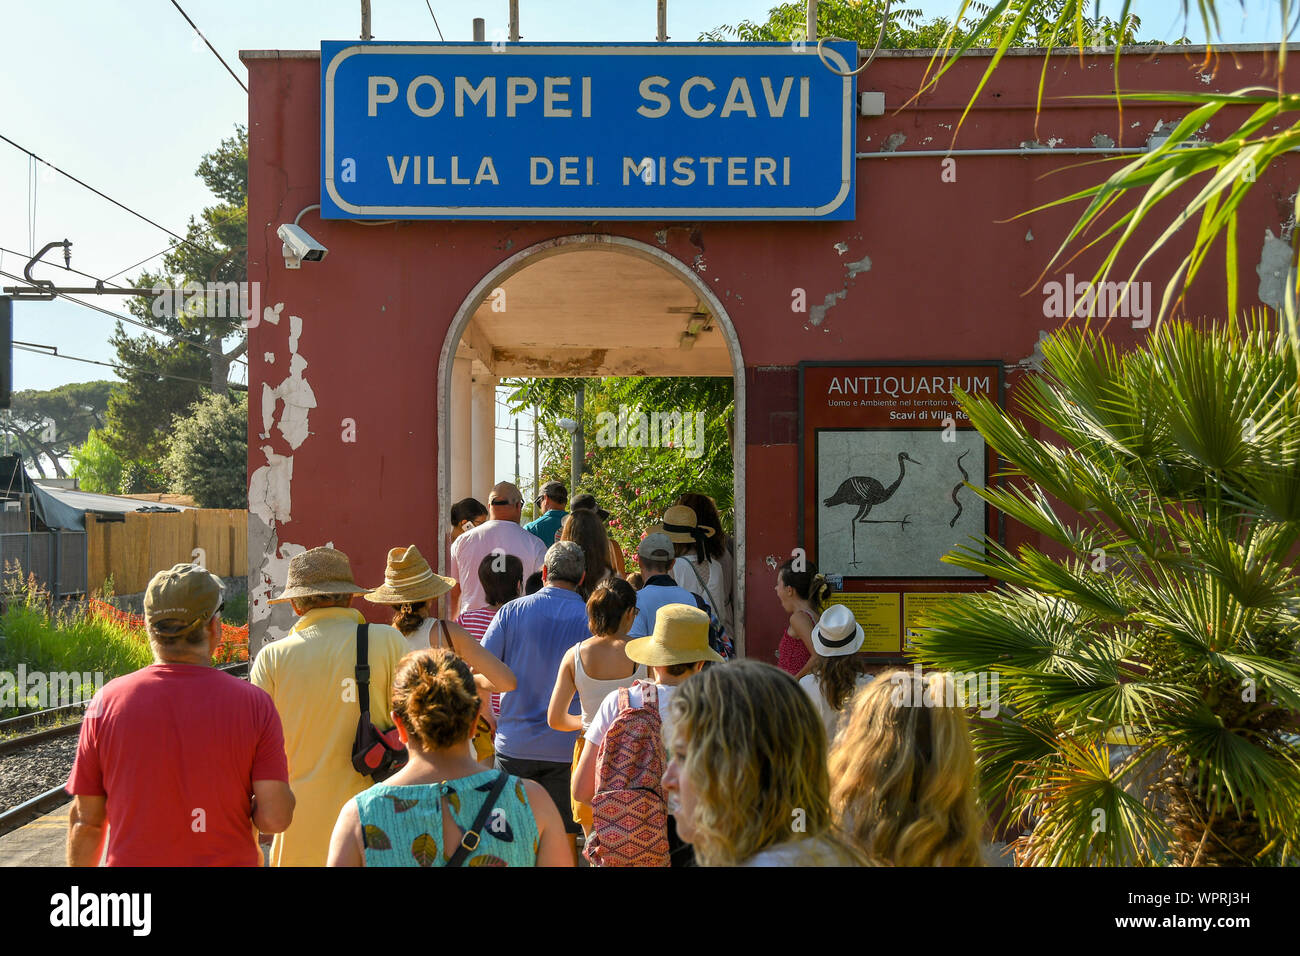 Pompeya, cerca de Nápoles, Italia - Agosto 2019: Personas en cola para salir de la estación de Pompeii Scavi. La estación está al lado del sitio de la ruina histórica Foto de stock